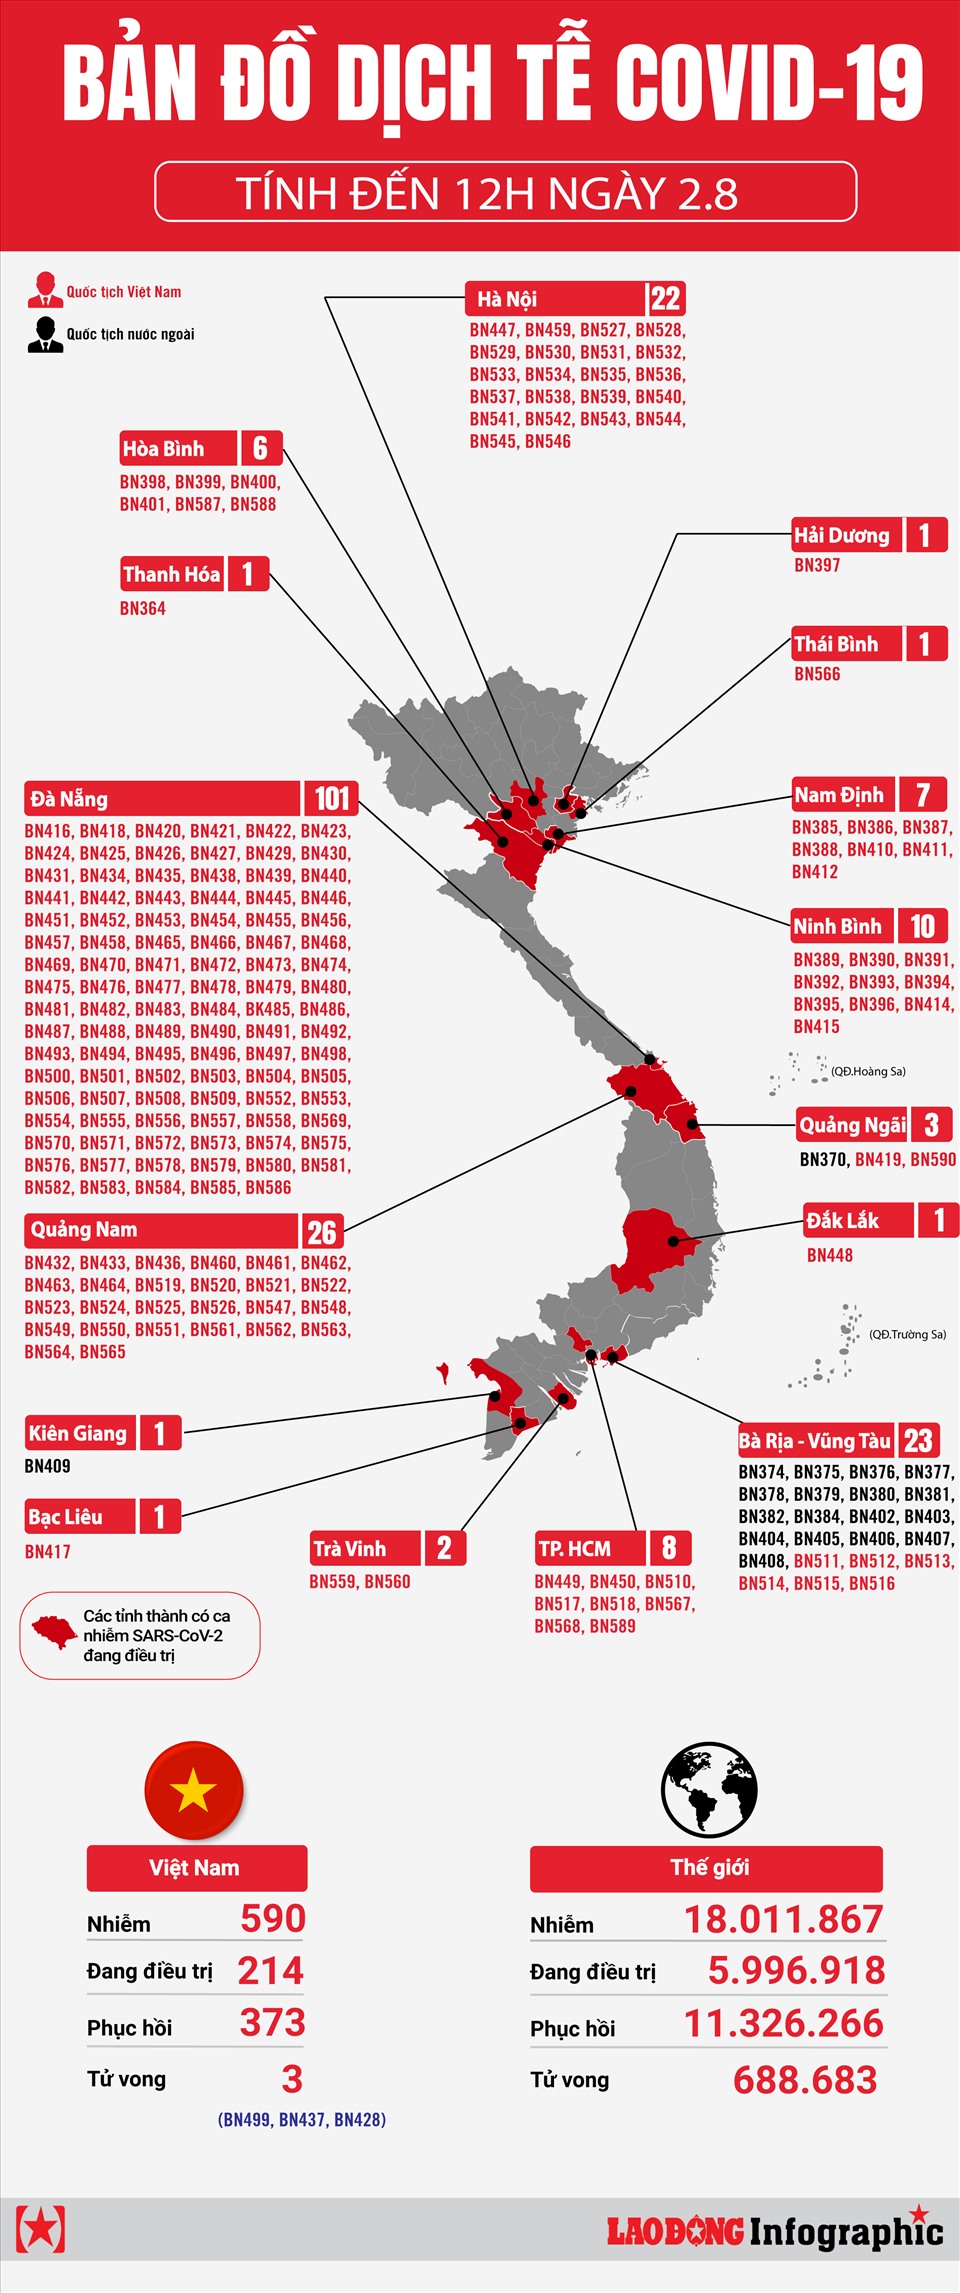 Bản đồ dịch tễ Việt Nam năm 2024 mang lại cho bạn thông tin chi tiết về tình hình dịch bệnh trên toàn quốc. Qua đó, bạn có thể đưa ra các quyết định phòng chống dịch hiệu quả và  giúp đảm bảo sức khỏe cho cộng đồng. Hãy sử dụng bản đồ này để nắm bắt tình hình và cùng nhau chung tay đẩy lùi đại dịch COVID-19!